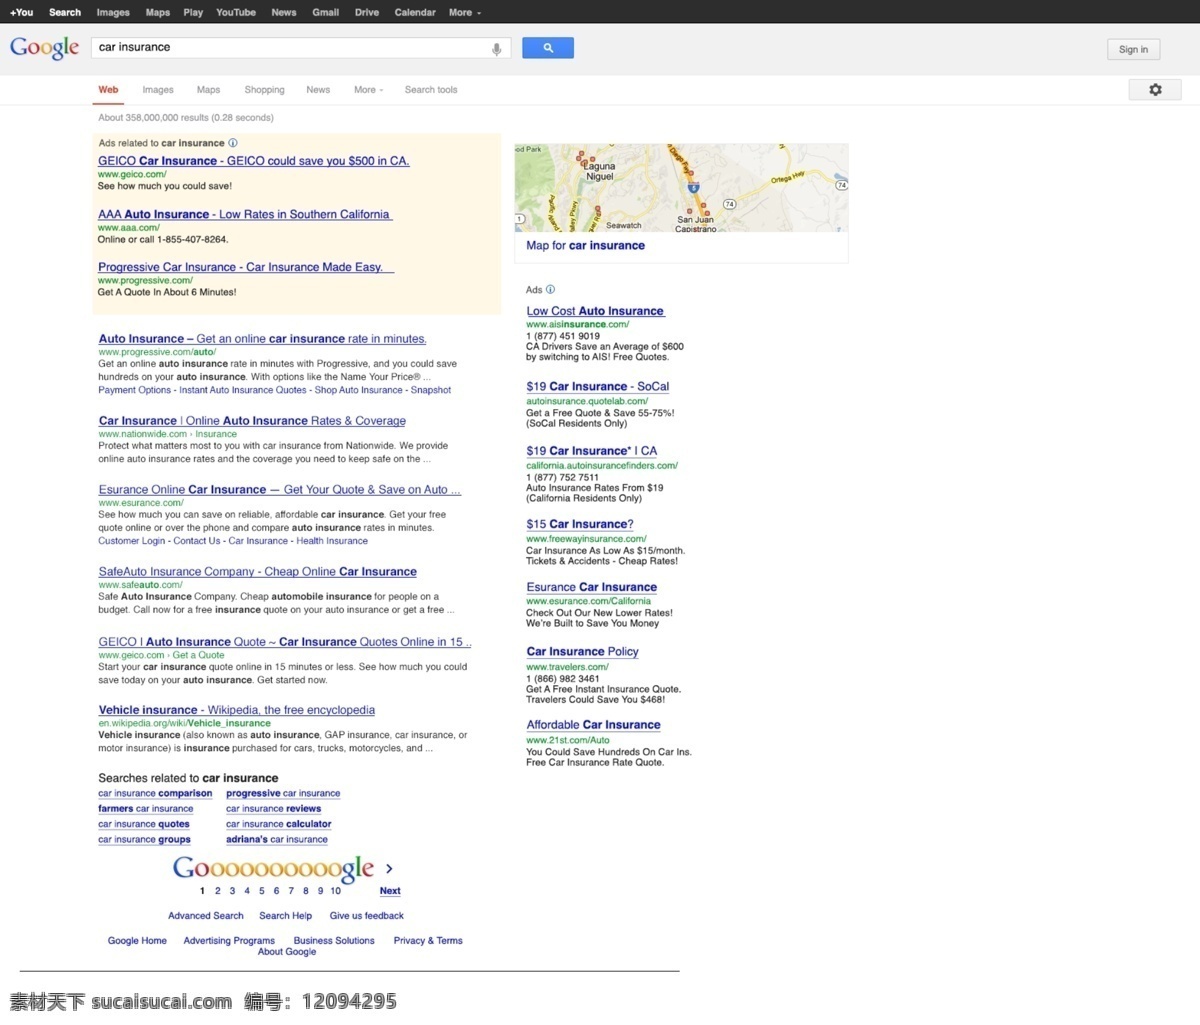 谷 歌 搜索 页面 模型 web 创意 发动机 高分辨率 接口 免费 清洁 时尚的 现代的 独特的 原始的 质量 新鲜的 设计新的 hd 元素 用户界面 ui元素 详细的 谷歌搜索页 谷歌搜索模型 搜索结果 页 矢量图